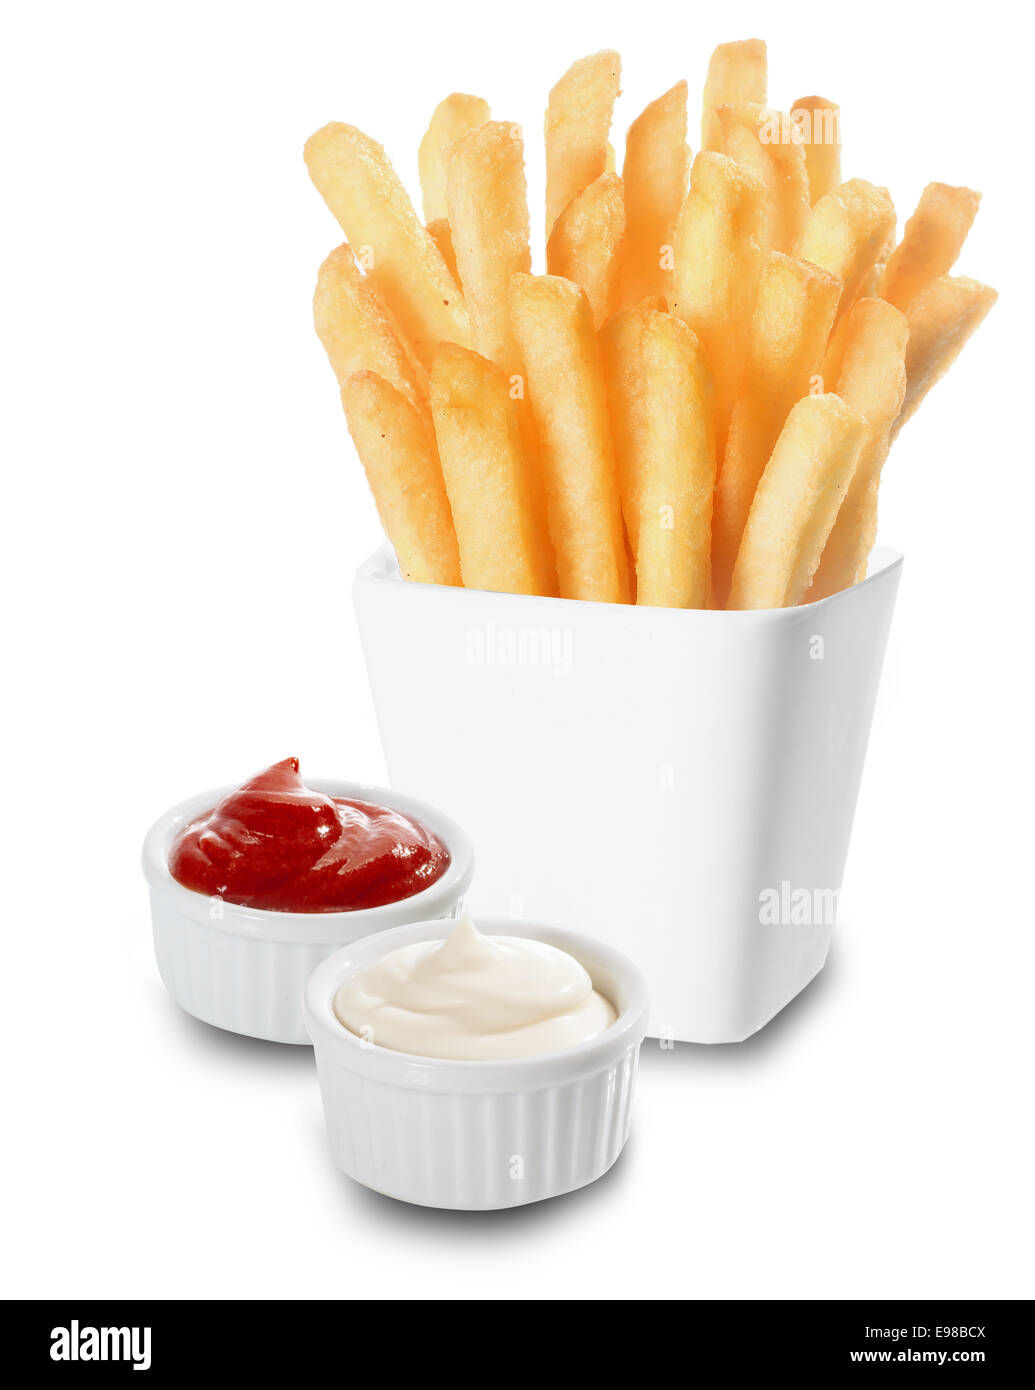 Knusprig goldene Pommes frites oder gebratene Kartoffelchips serviert mit Einzelbehältnissen cremige Mayonnaise und Tomaten Ketchup auf einem weißen Hintergrund Stockfoto